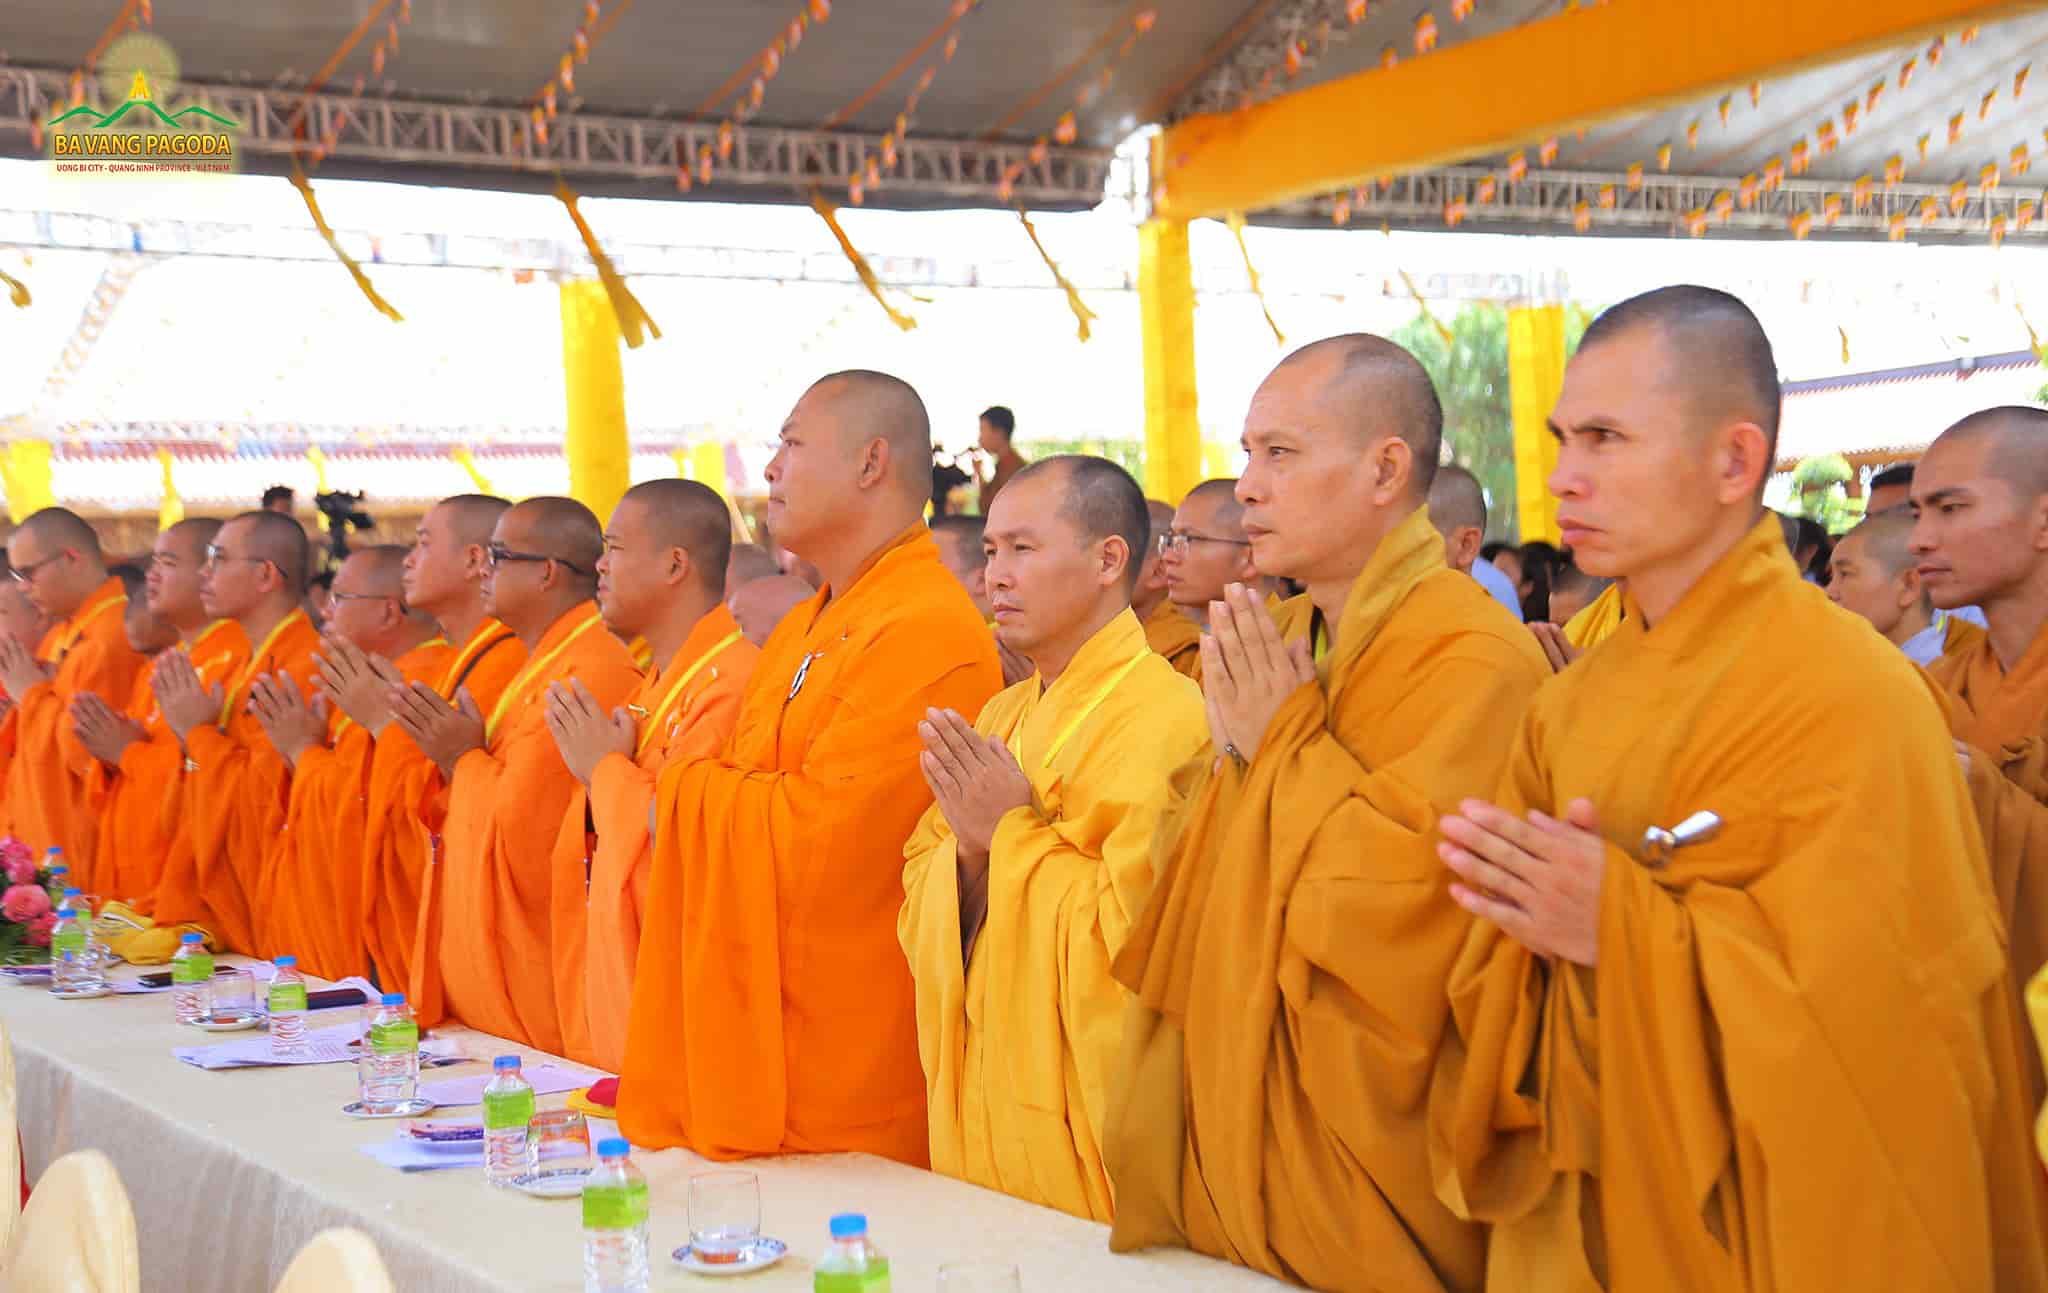 Monks and Nuns at the Commemoration ceremony at Ba Vang Pagoda